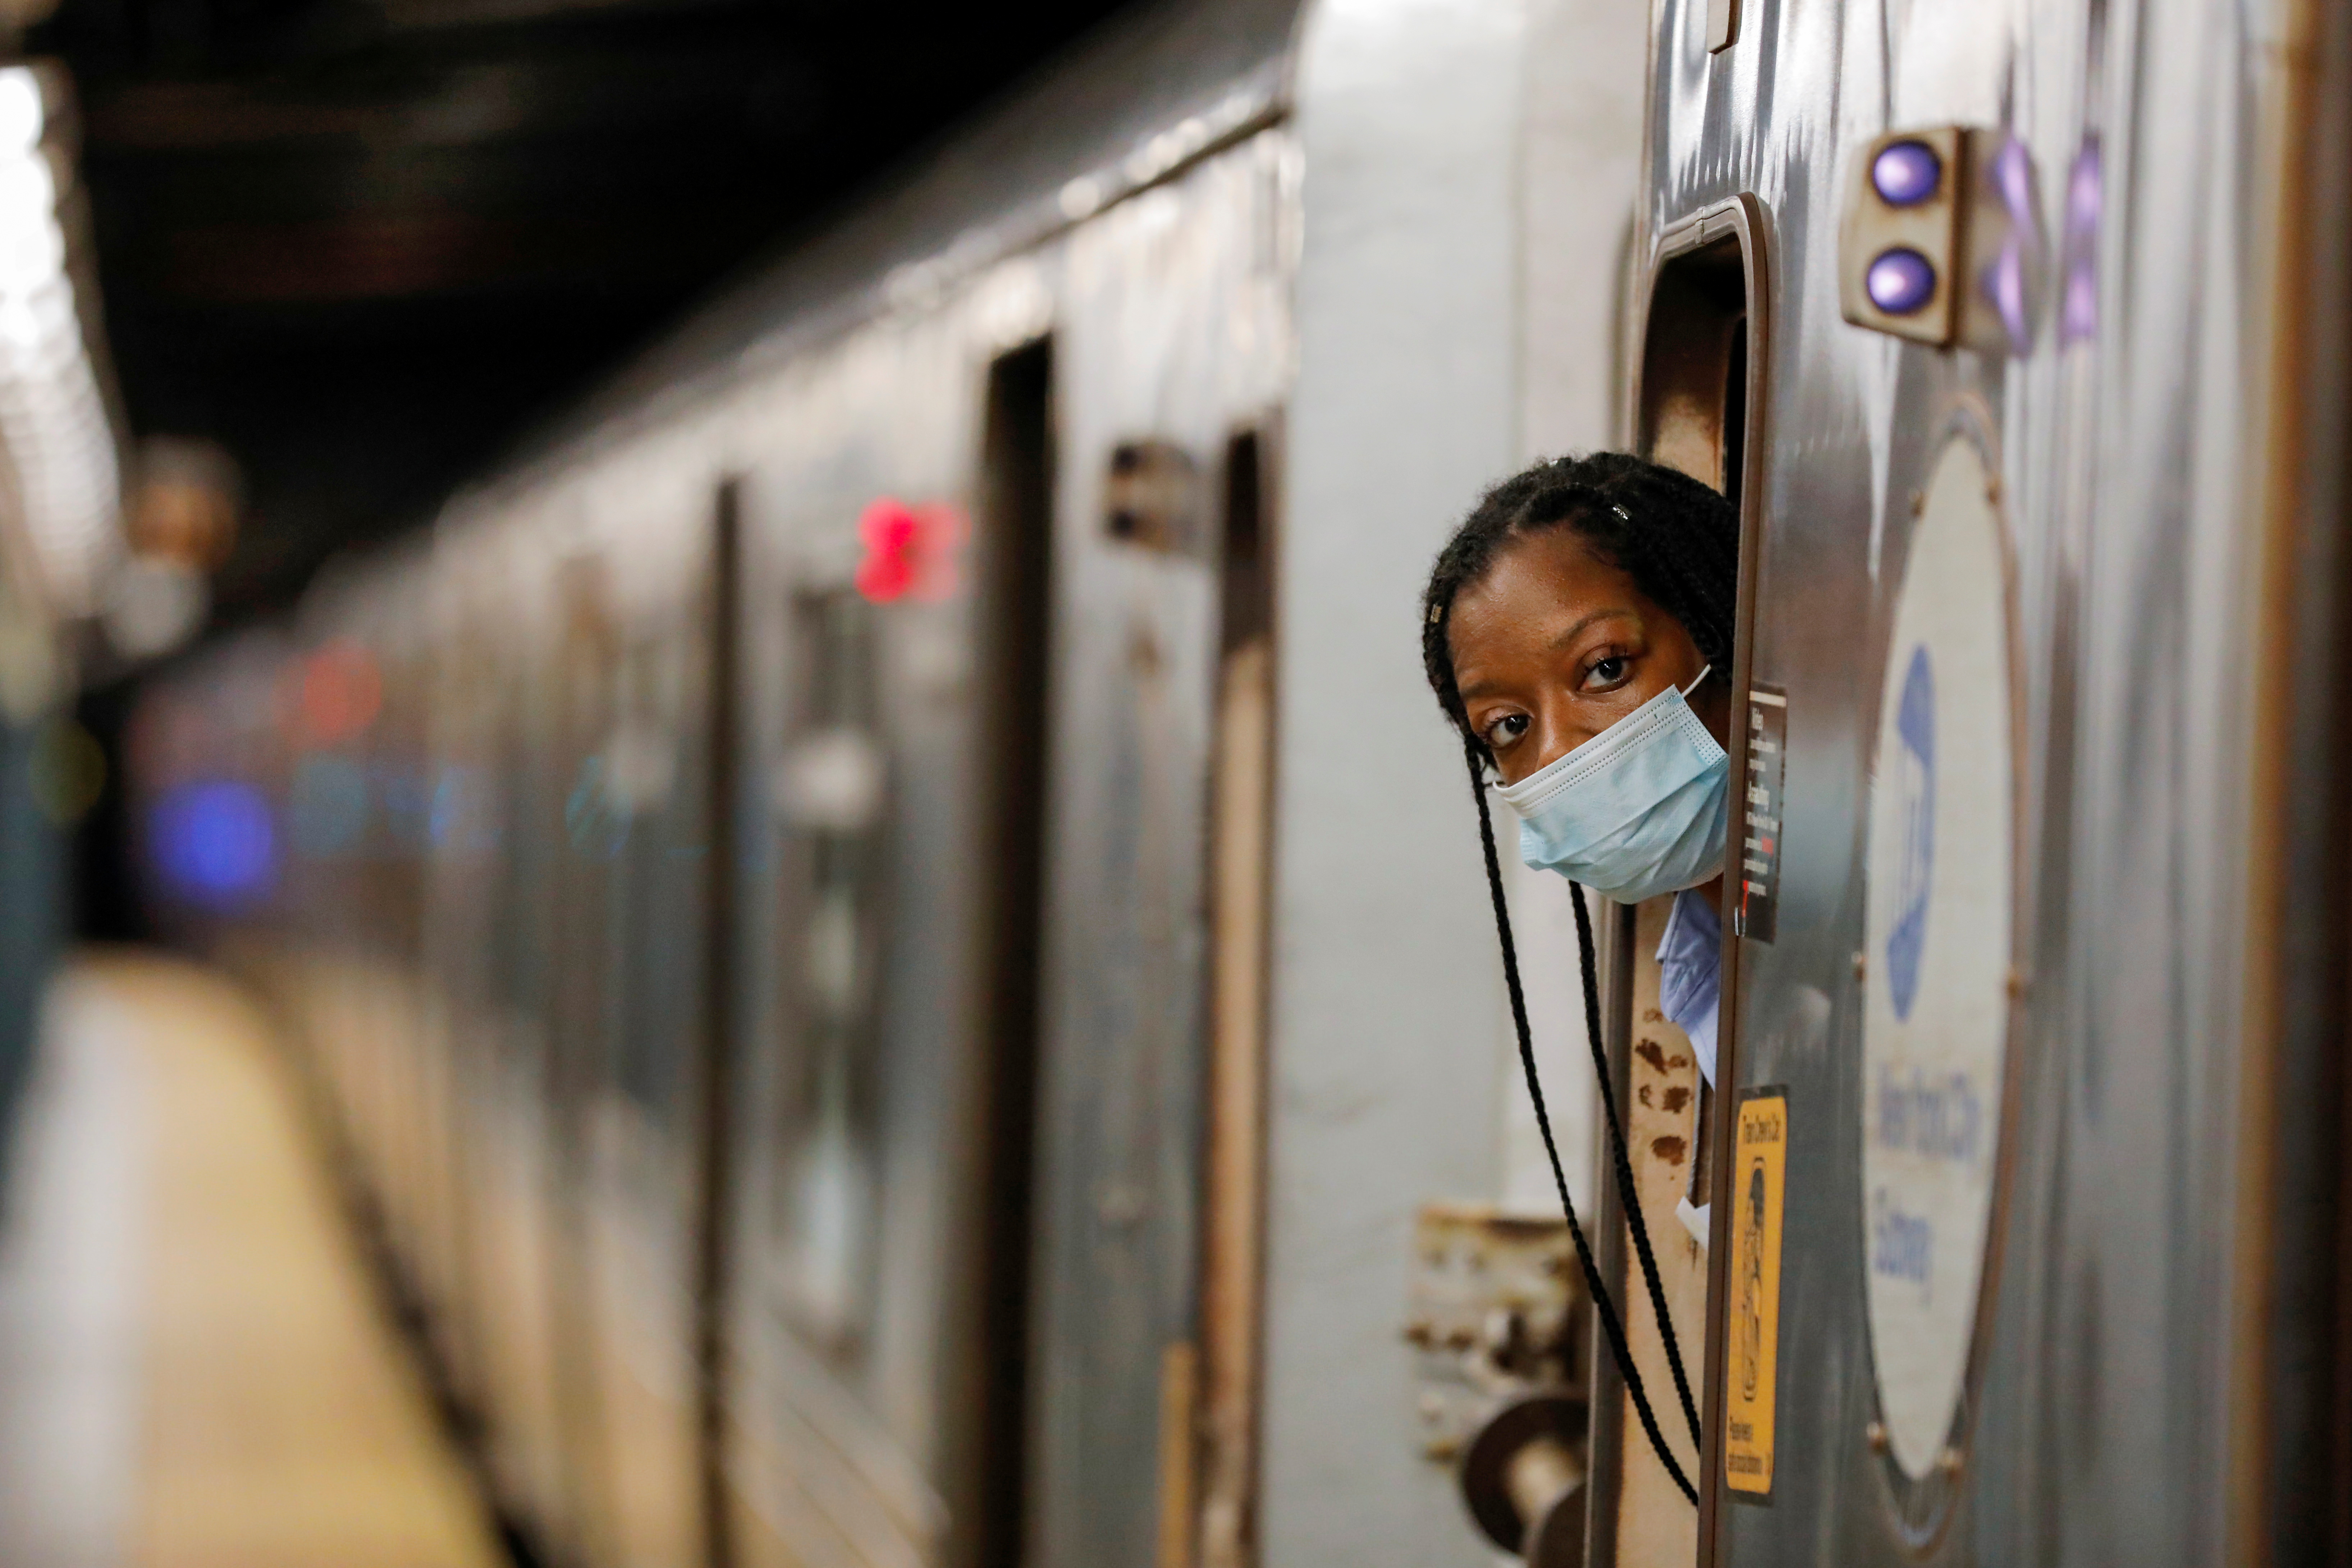 الخدمة الخلوية قادمة إلى أنفاق مترو الأنفاق في مدينة نيويورك ، لكن الأمر سيستغرق بعض الوقت